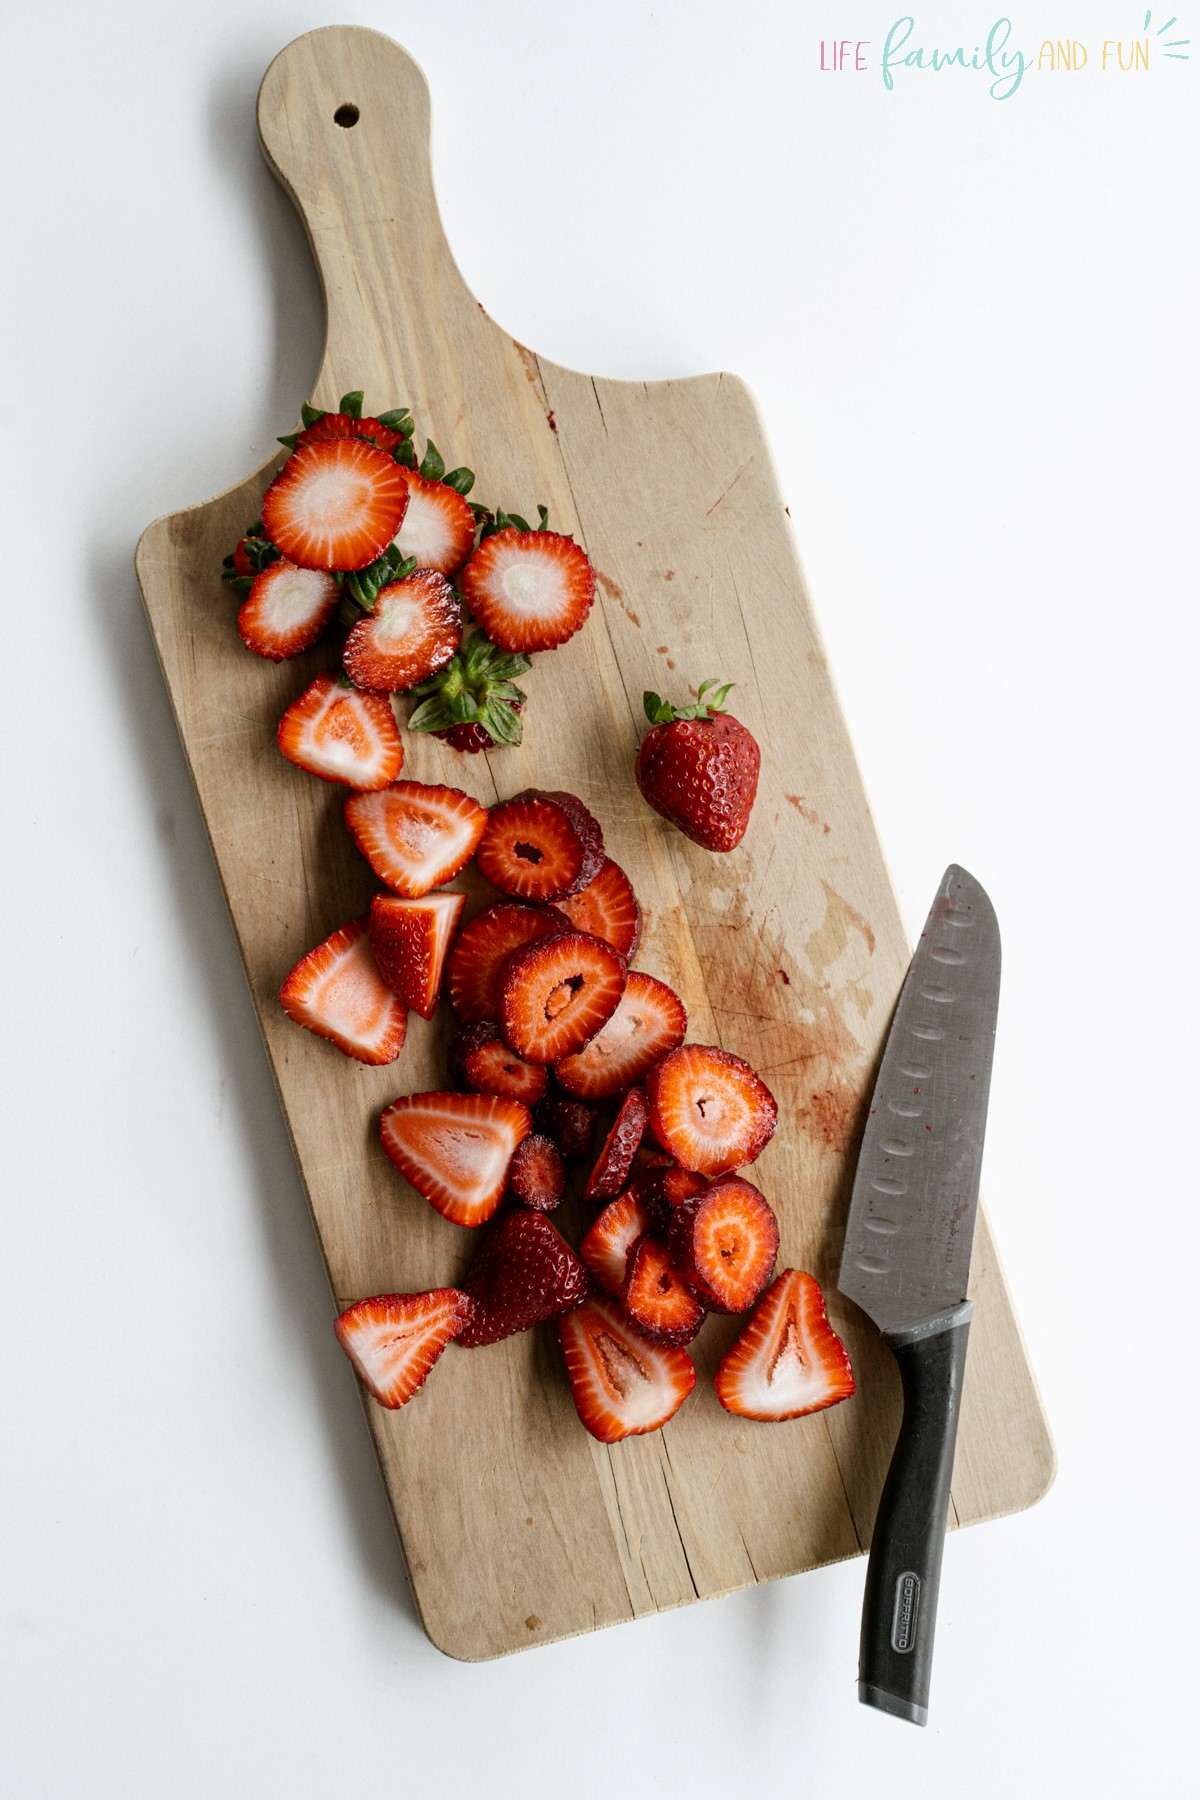 Spinach Strawberry Salad - prepare the strawberry